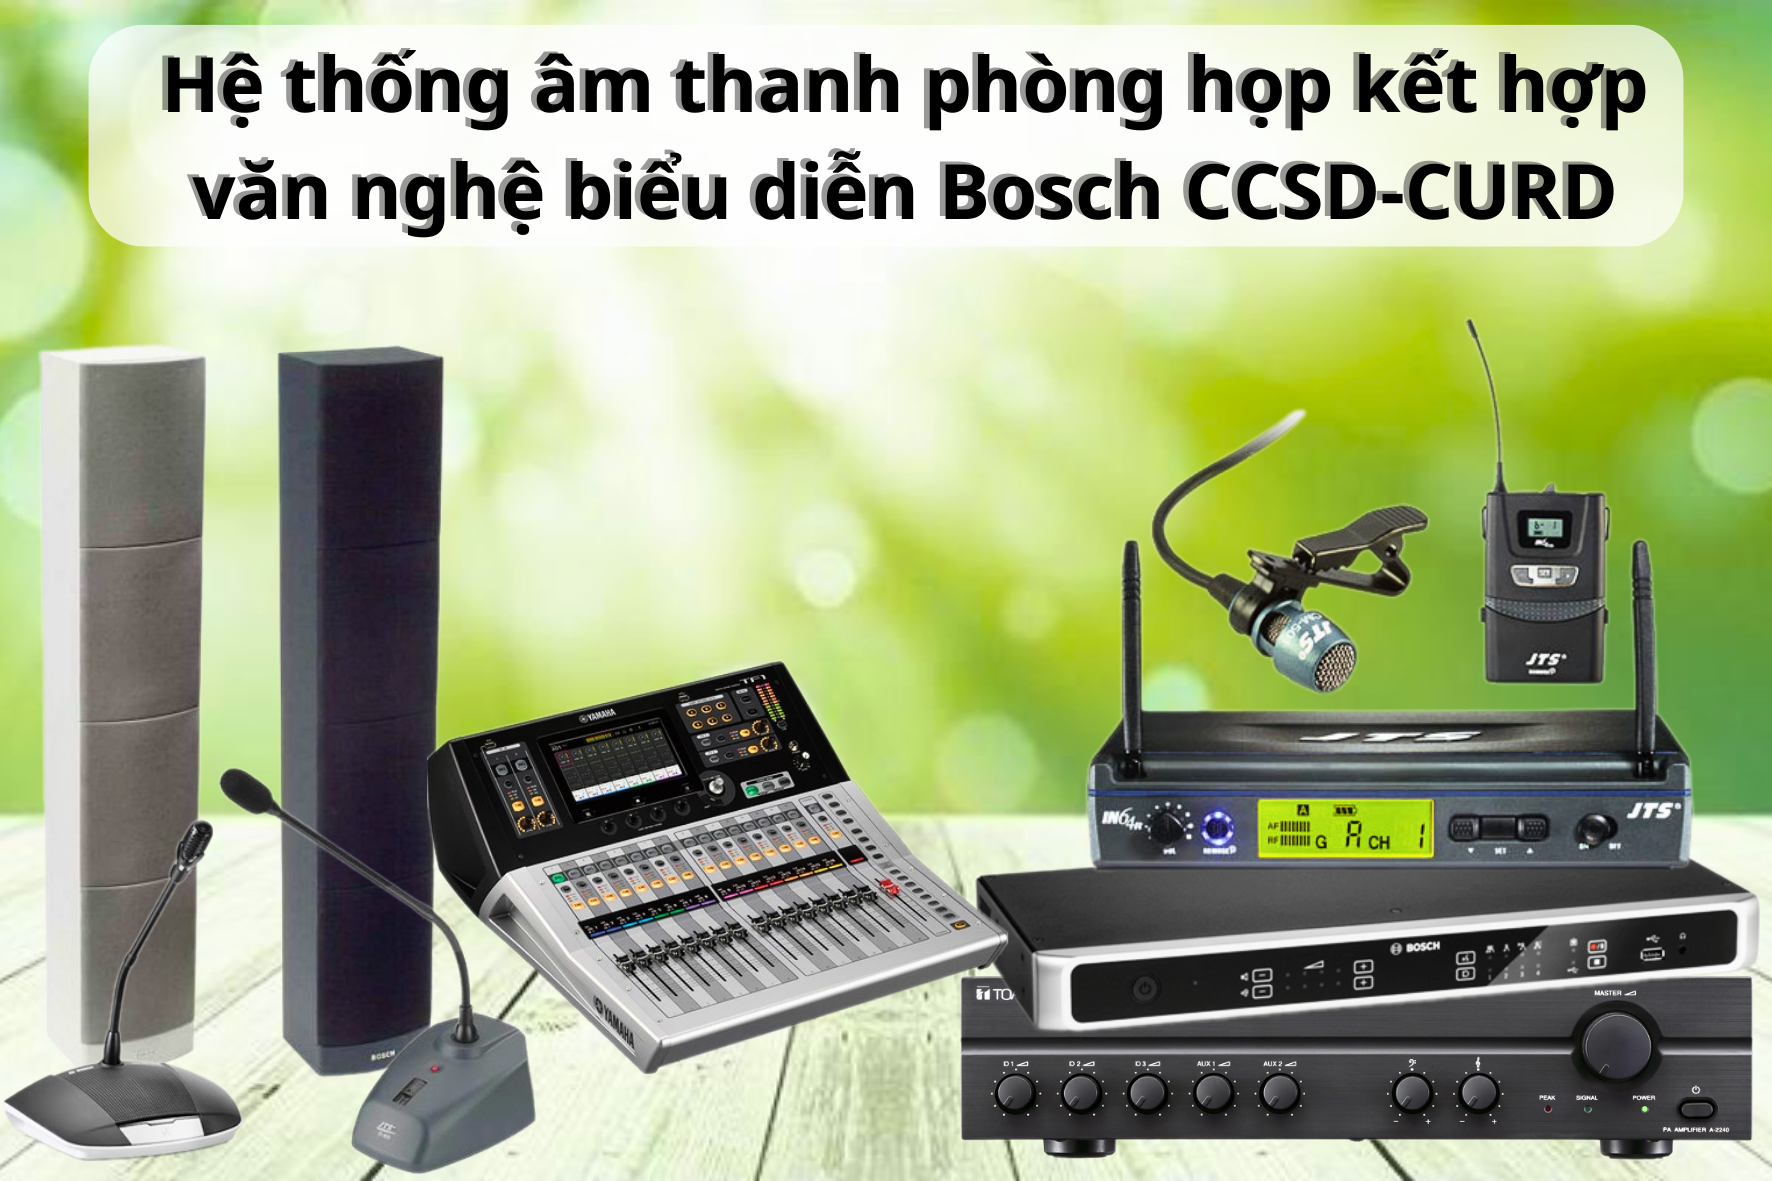 Hệ thống âm thanh phòng họp kết hợp văn nghệ biểu diễn Bosch CCSD-CURD